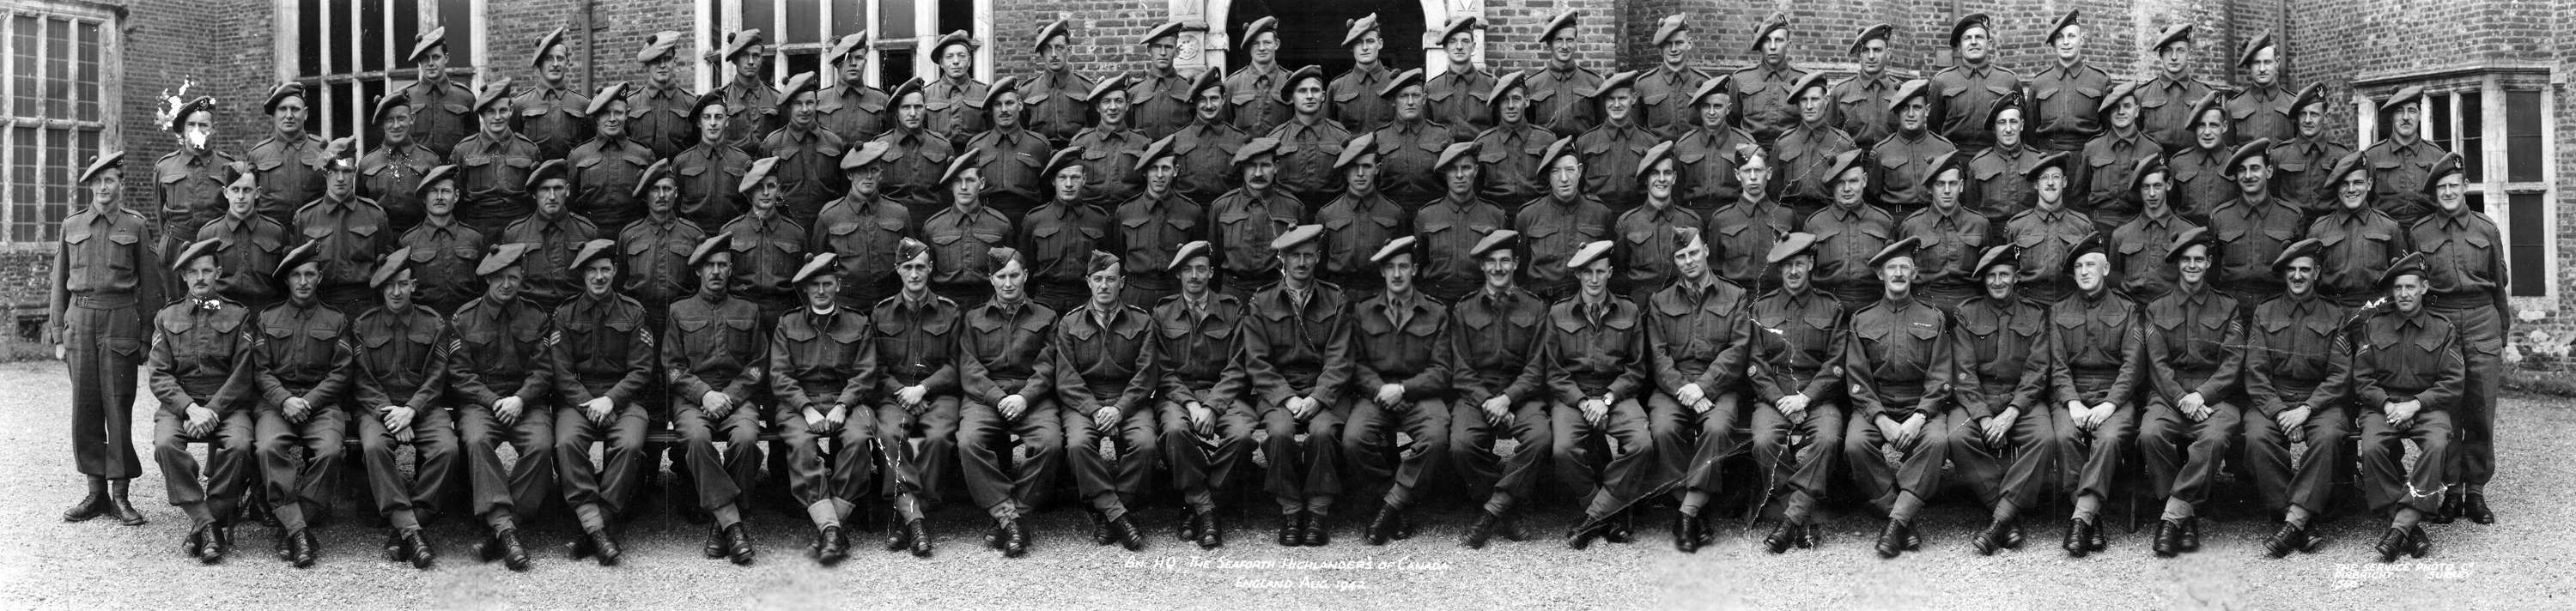 Battalion H.Q., The Seaforth Highlanders of Canada, England Aug. 1942.jpg